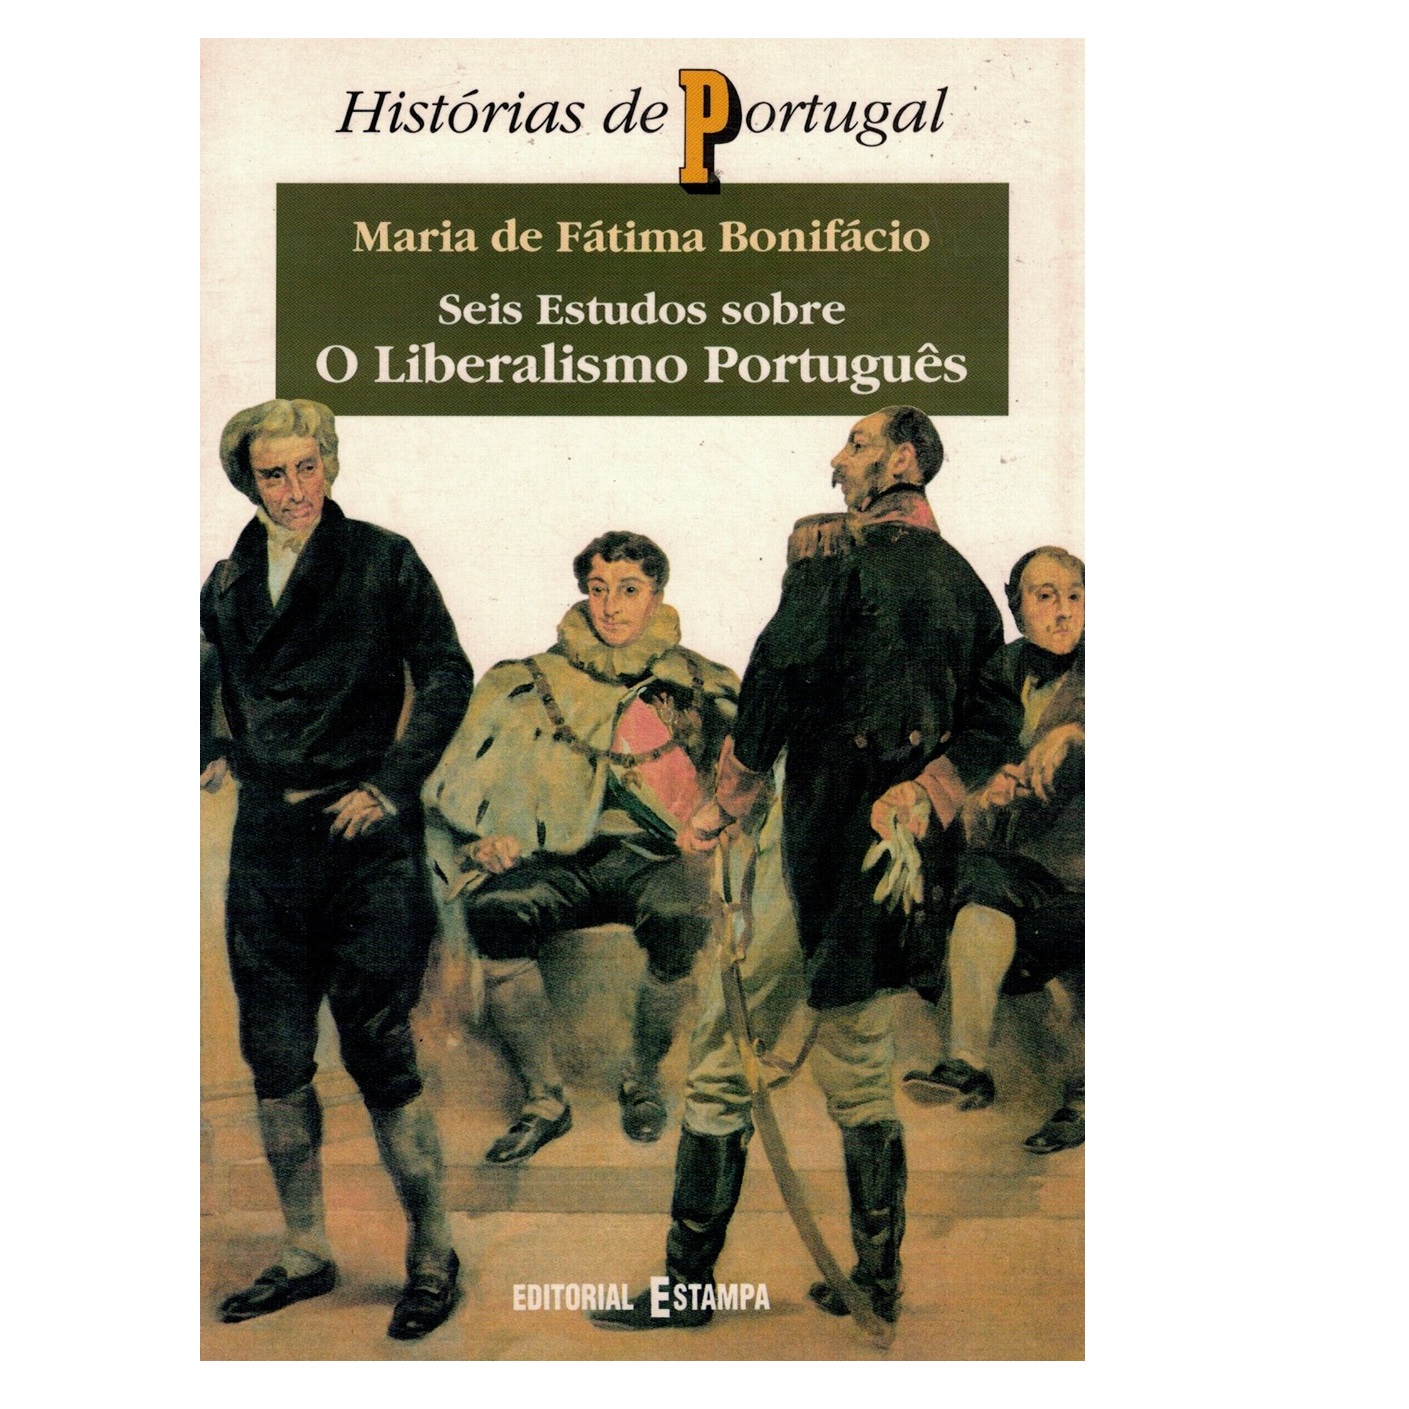 Seis estudos sobre o Liberalismo Português